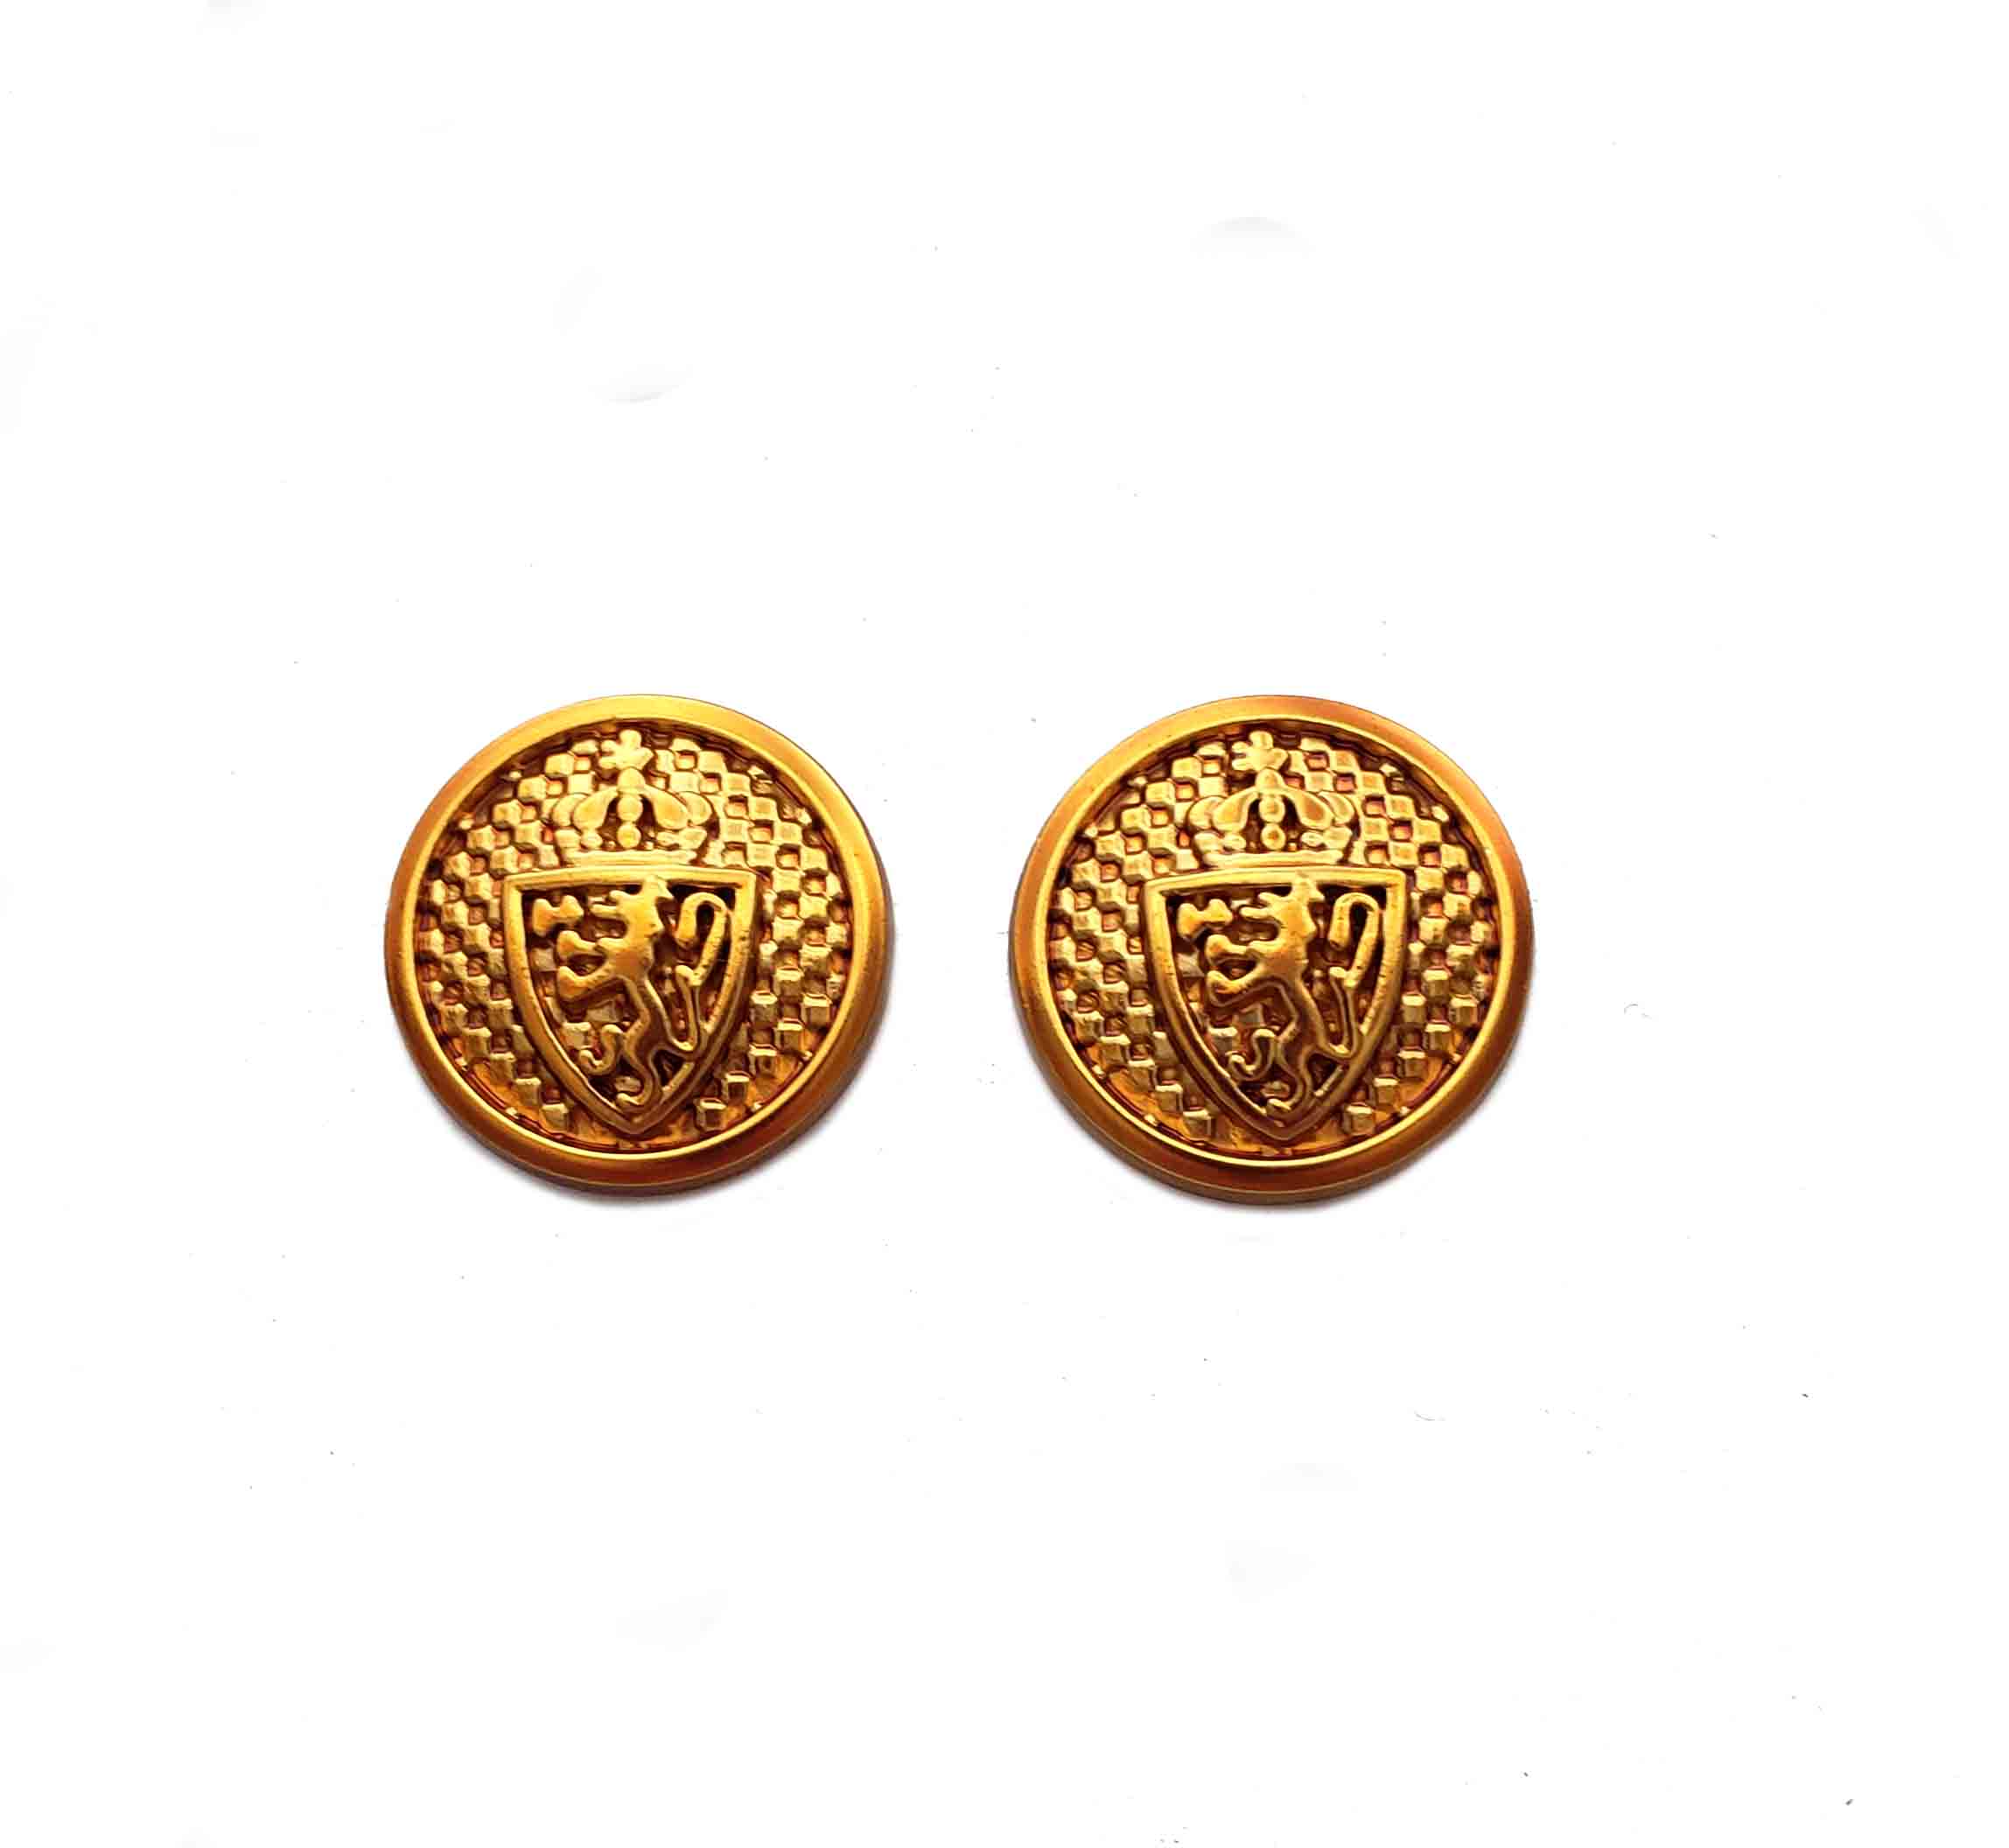 Two New Blazer Buttons Semi-Dome Rampant Lion Orange-Gold Metal Men's